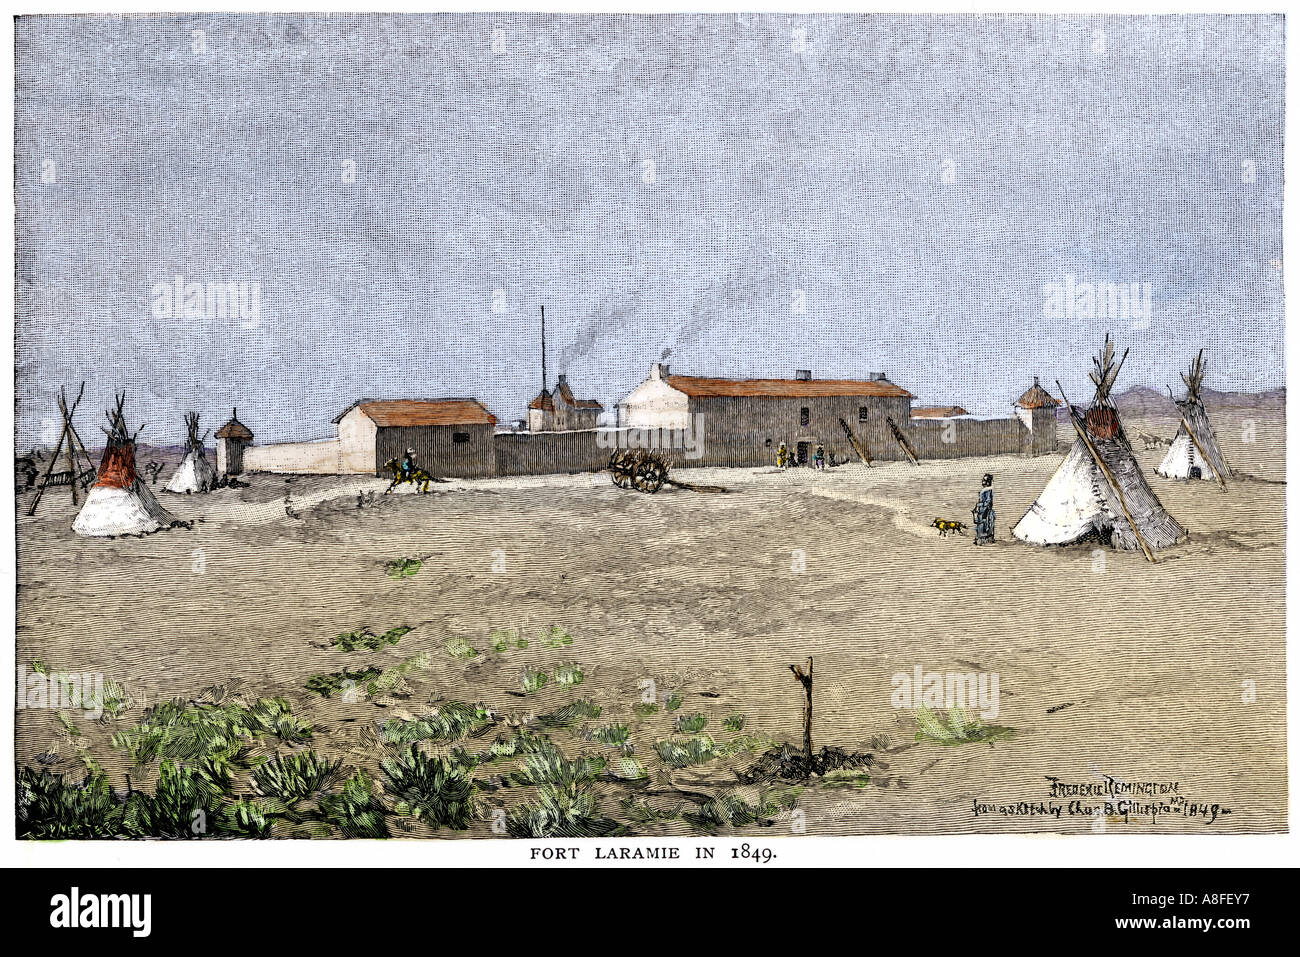 Fort Laramie Wyoming nel 1849 una pietra miliare chiave su Oregon Trail e il Mormon Trail. Colorate a mano la xilografia di Frederic Remington illustrazione Foto Stock